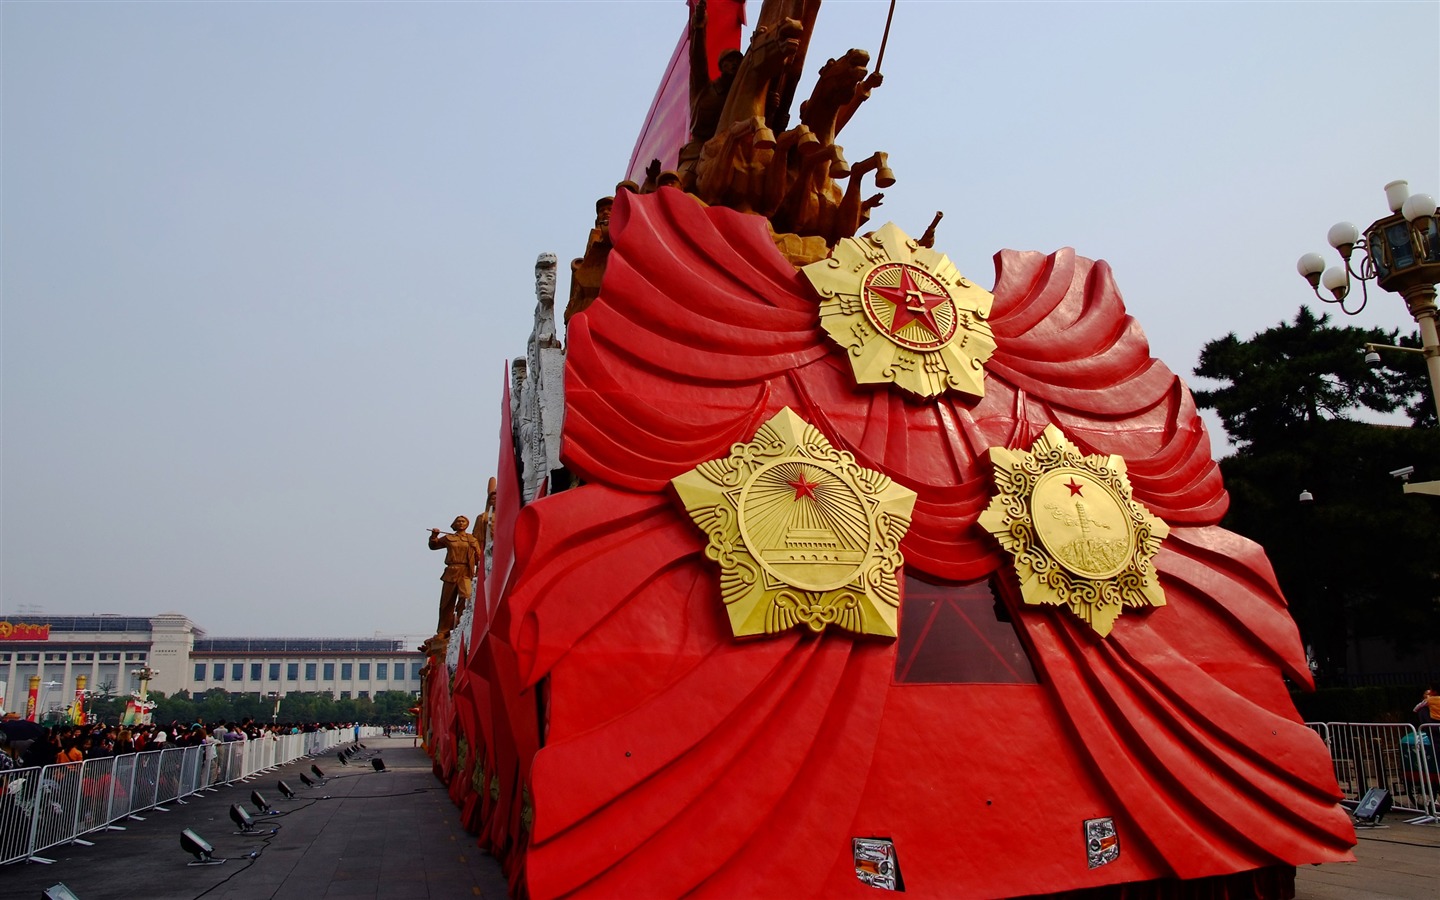 Kostýmy, náměstí Nebeského klidu (prutu práce) #30 - 1440x900